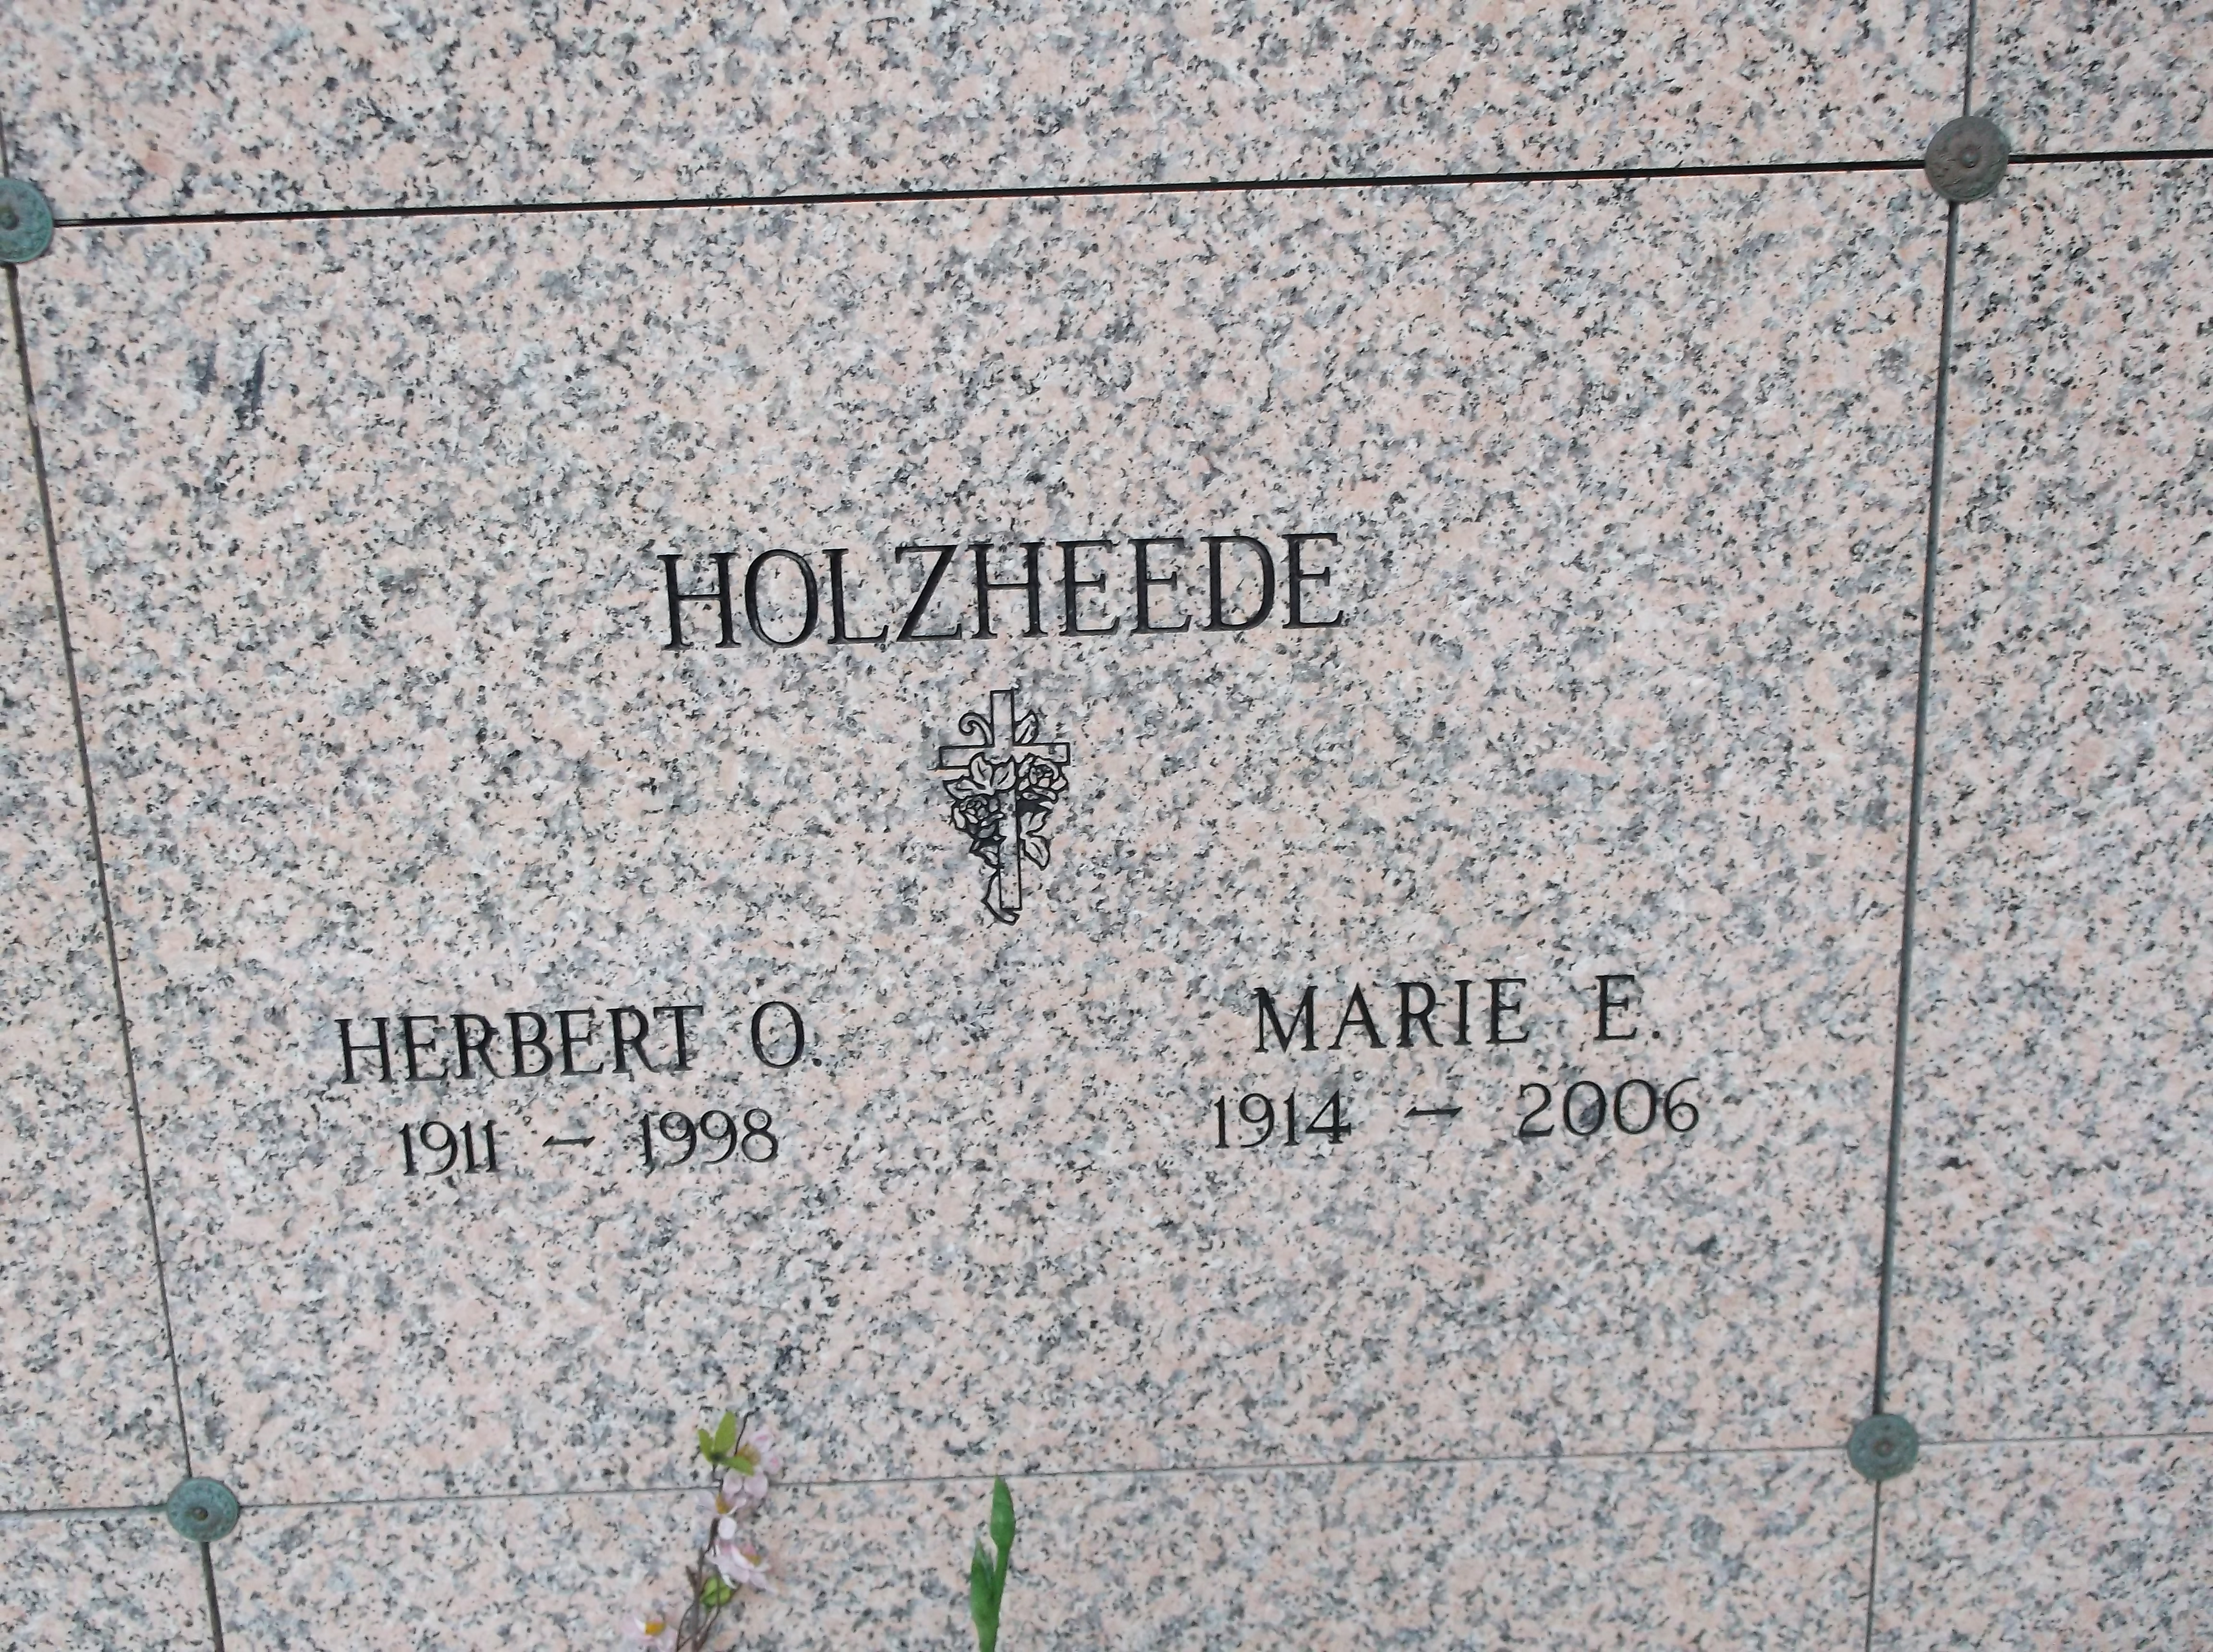 Marie E Holzheede